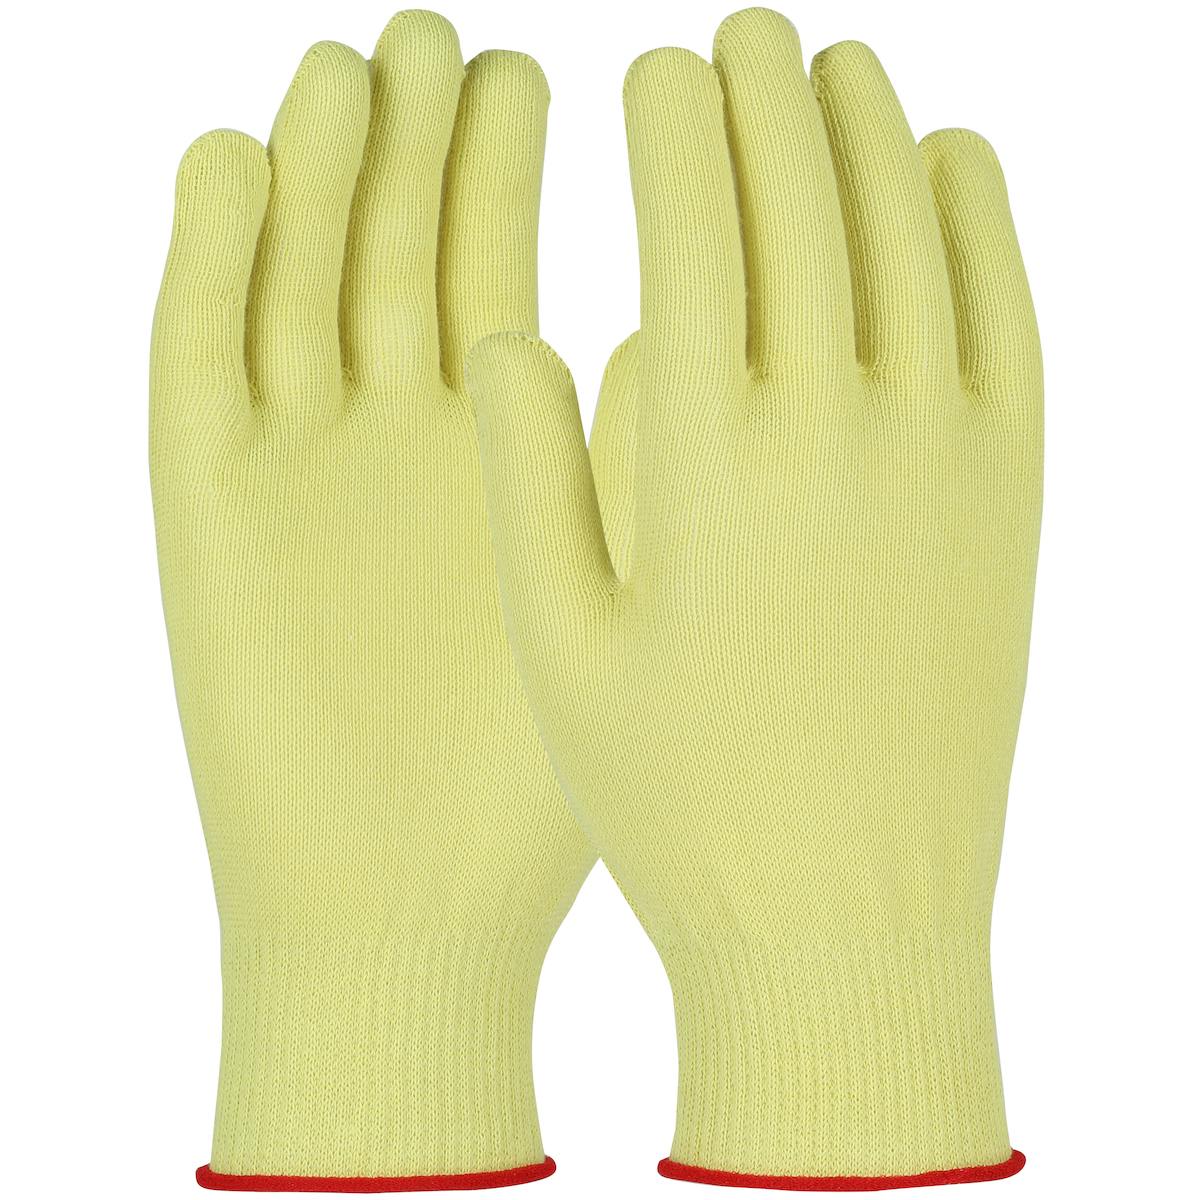 Kut Gard® Seamless Knit Aramid Glove - Light Weight (M13K)